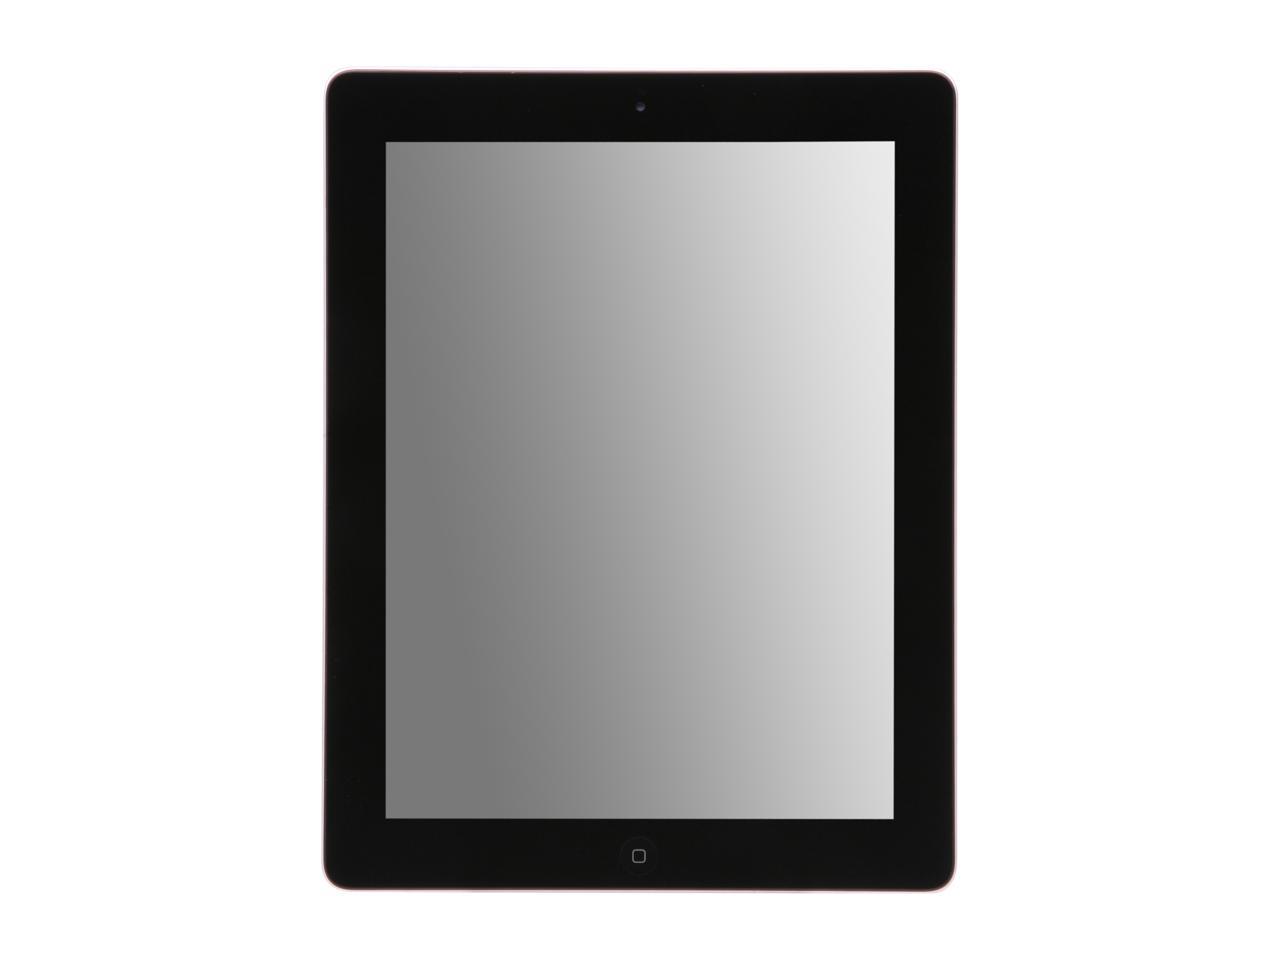 Apple MC916LL/A iPad 2 64GB with Wi-Fi - Black